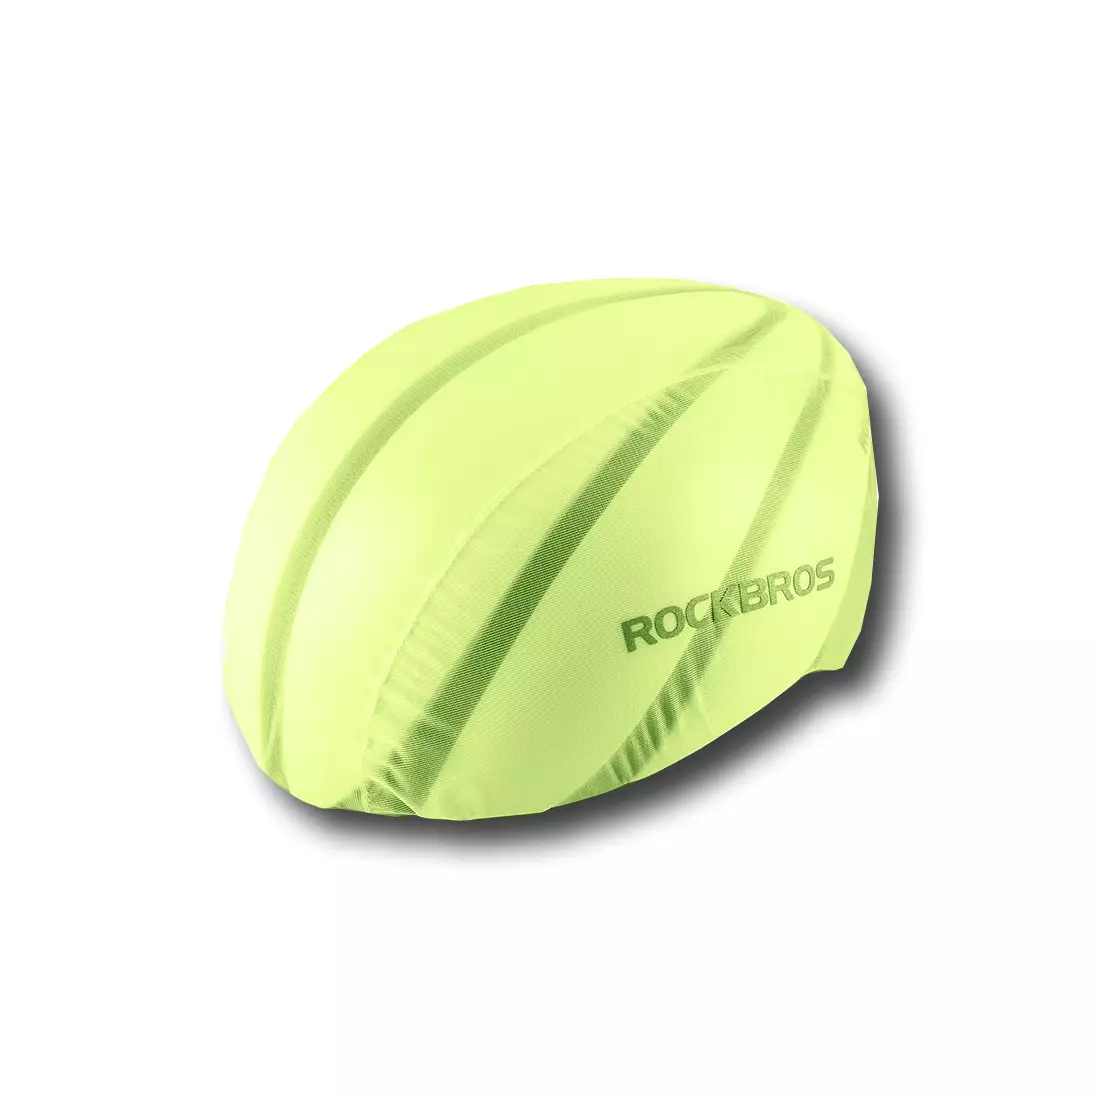 Rockbros waterproof helmet cover, yellow YPP017G